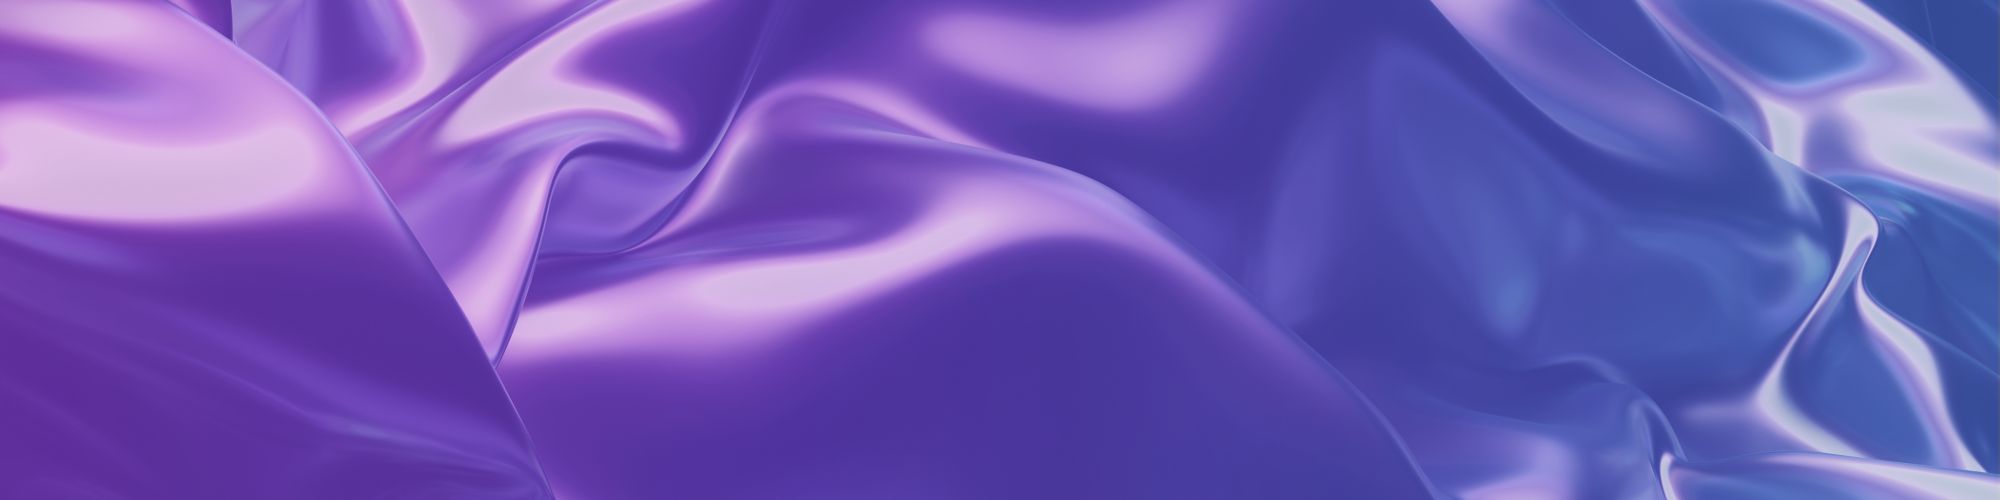 3D texture image with purple-blue gradient